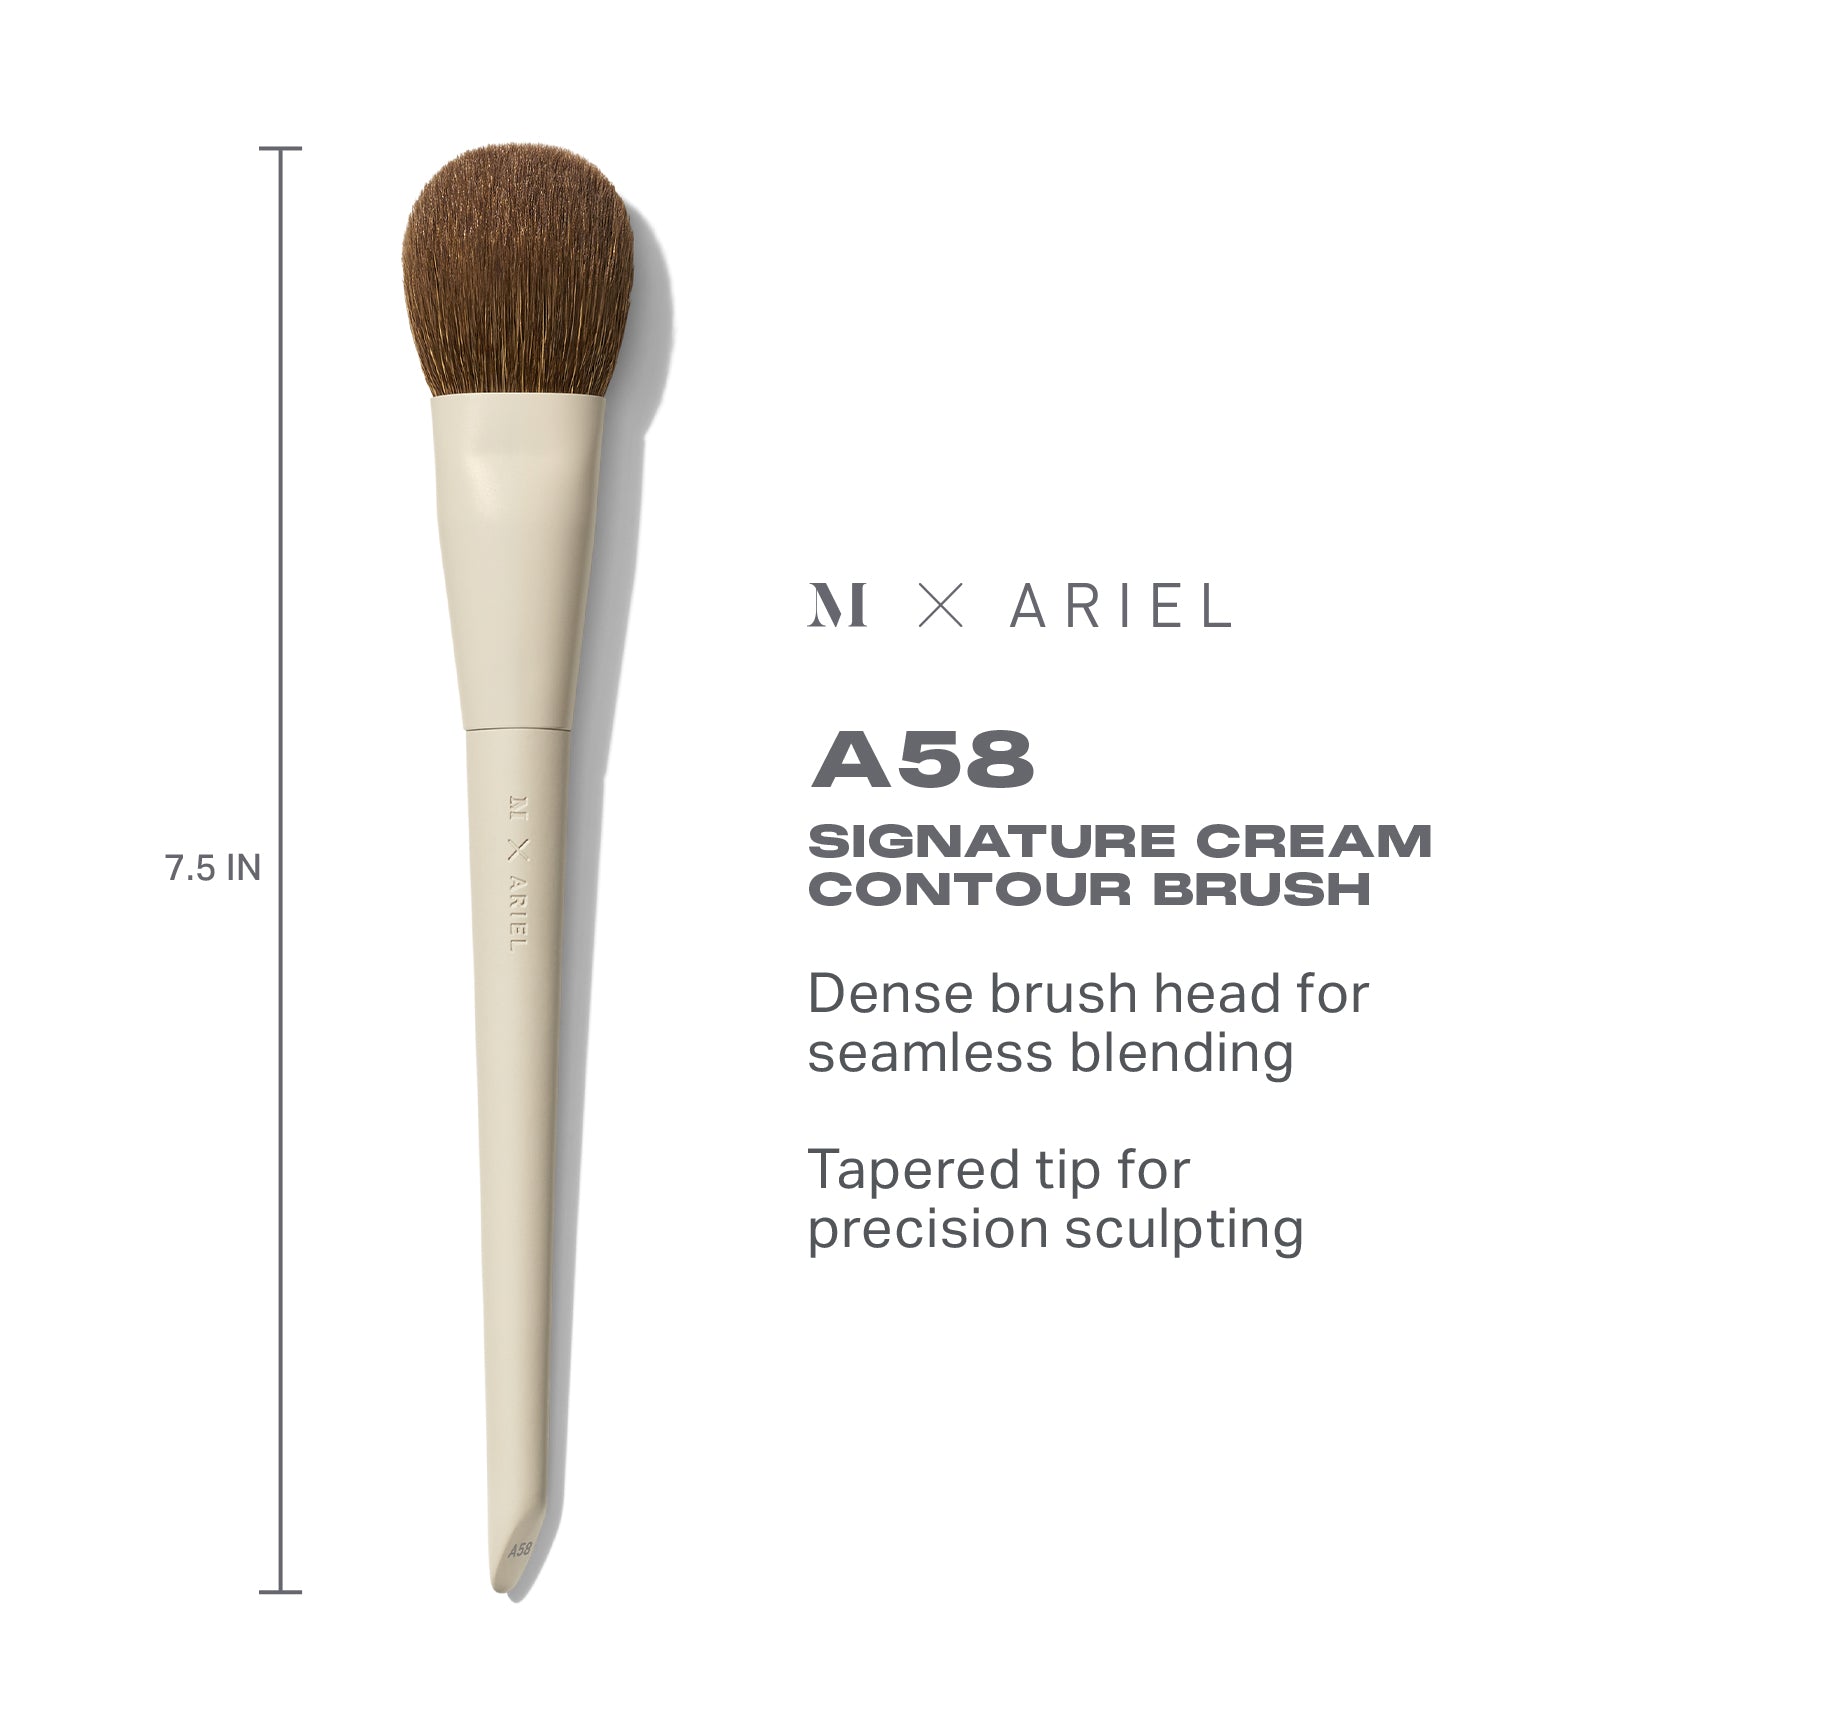 Morphe X Ariel A58 Signature Cream Contour Brush - Image 4